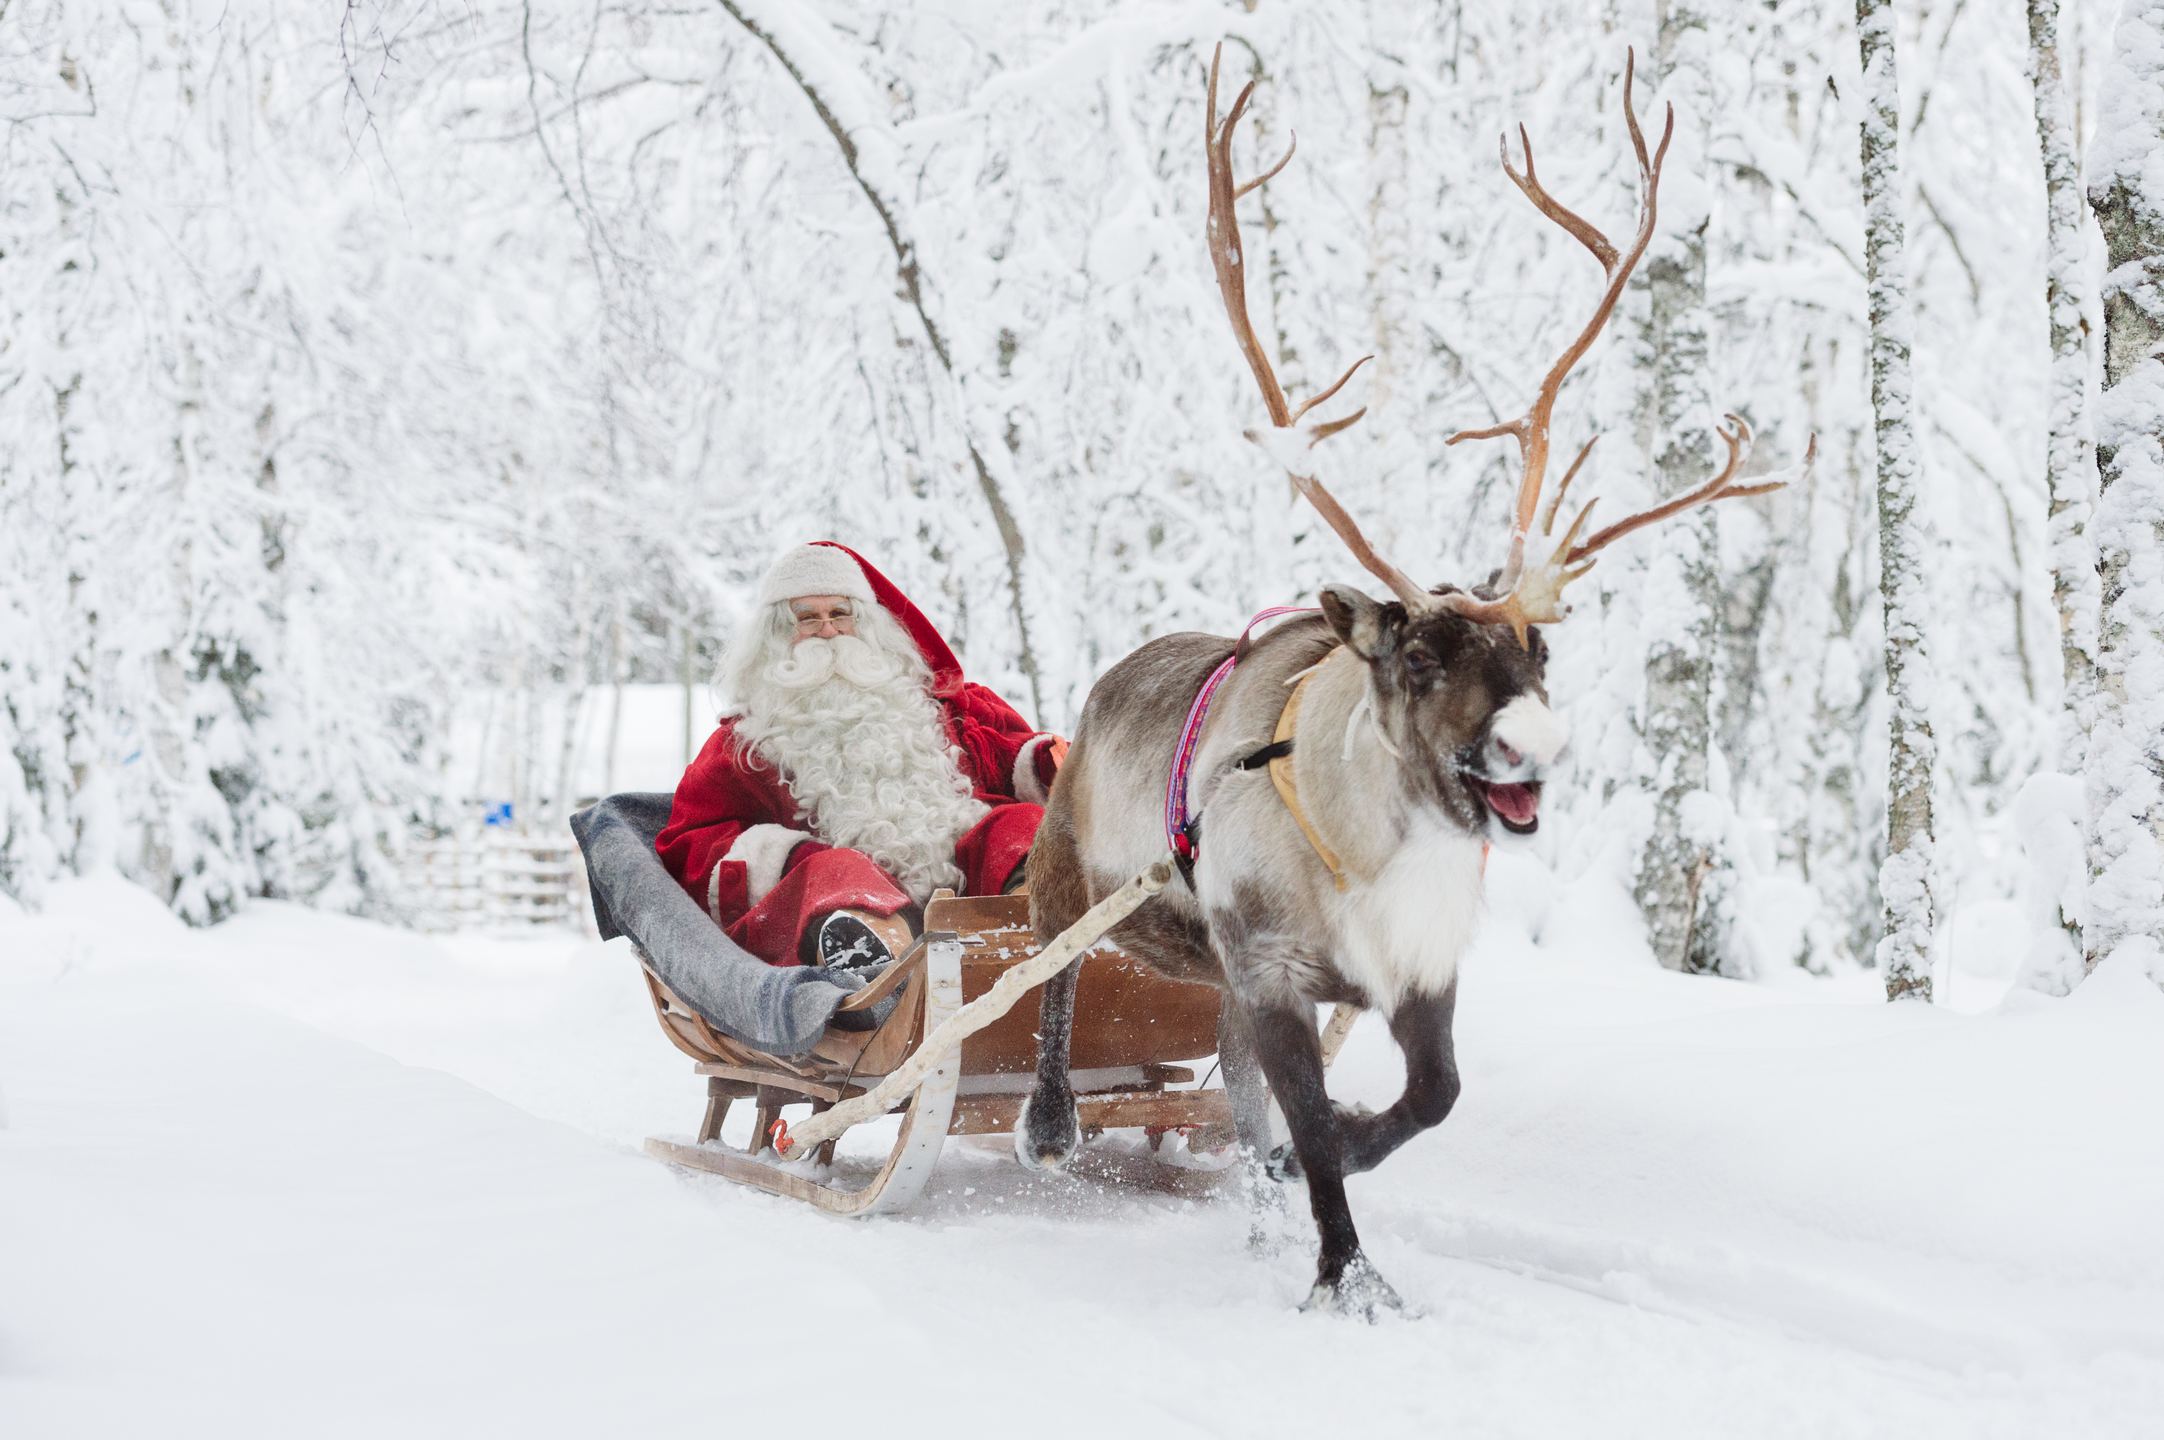 芬兰拉普兰区罗瓦涅米圣诞老人村一日游(合影 证书 驯鹿拉雪橇 雪地